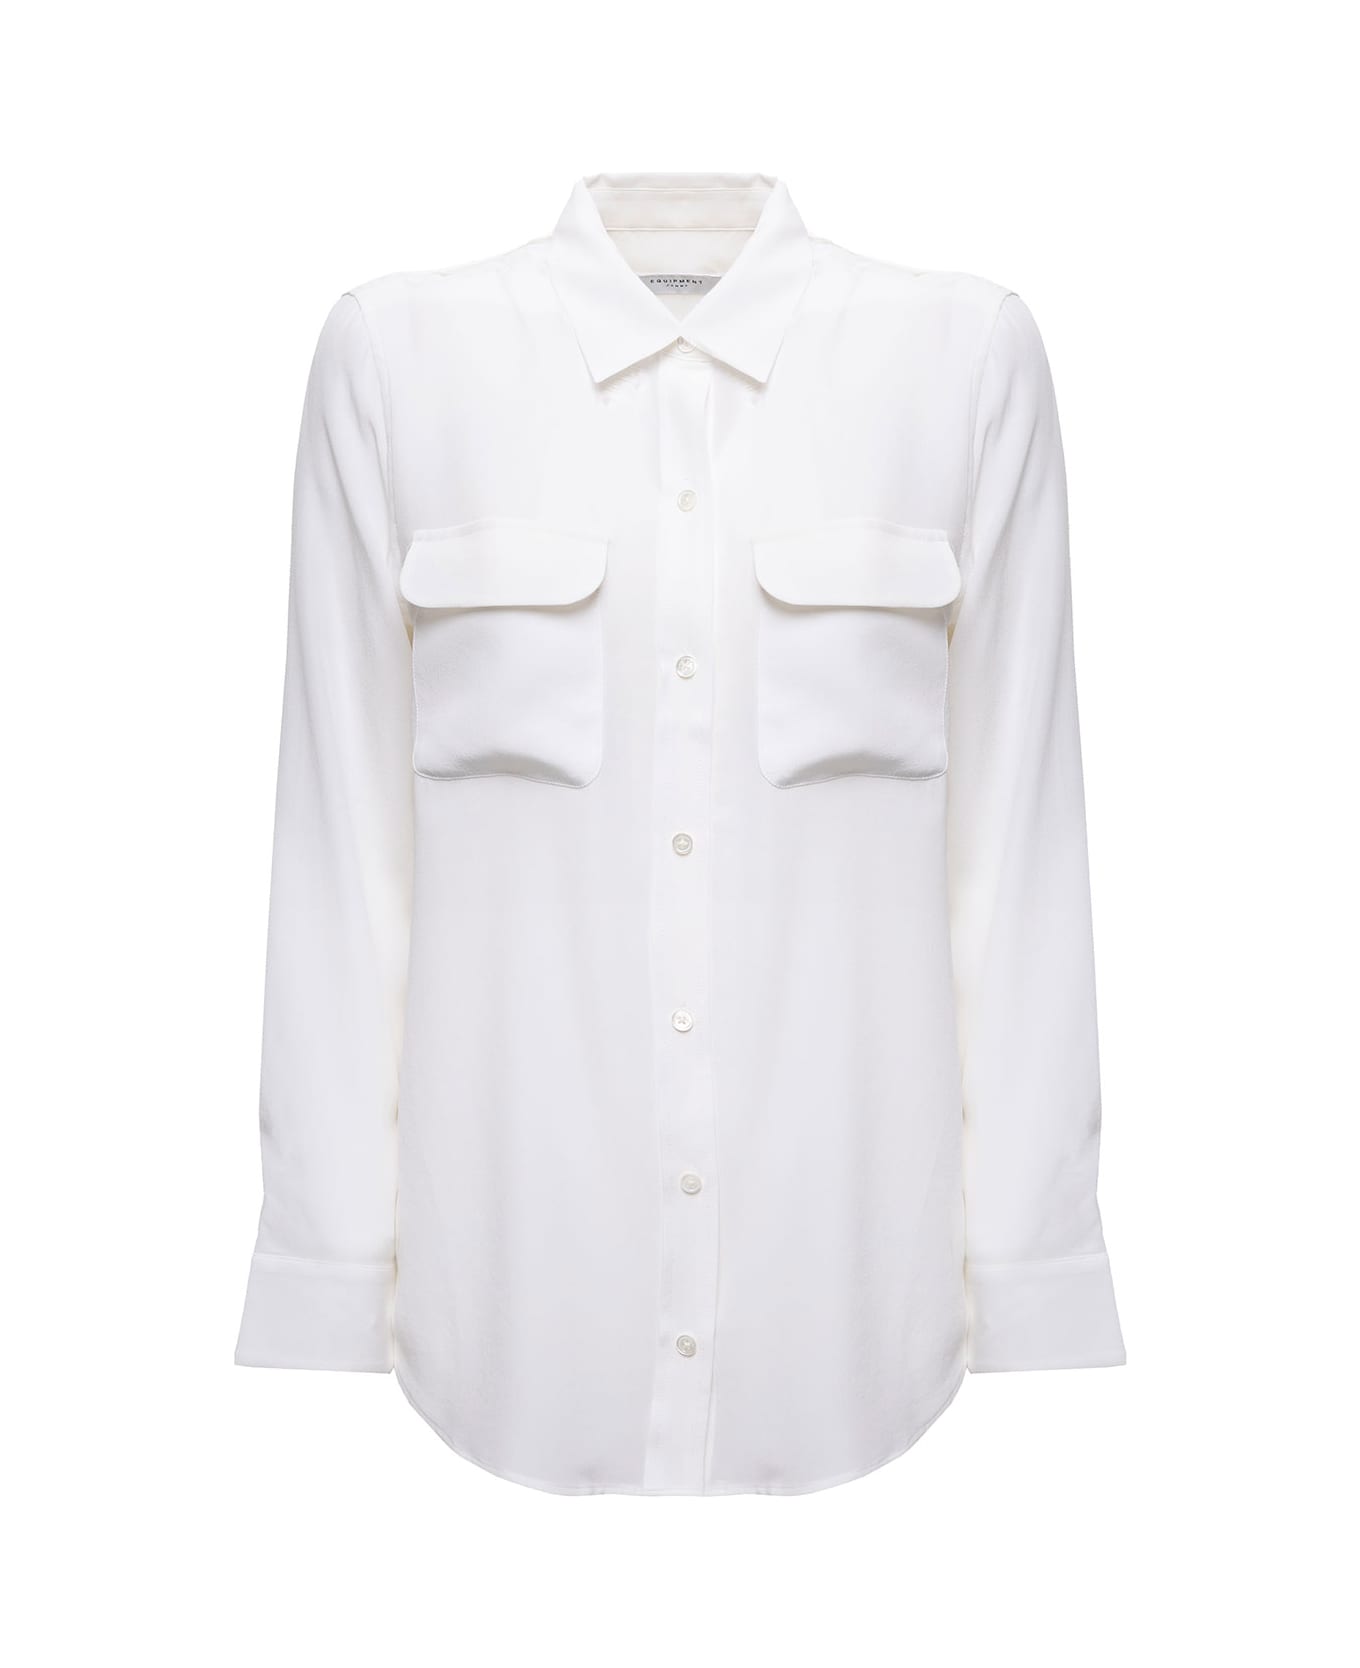 Equipment 'slim Signature' Silk White Shirt Woman - Bianco